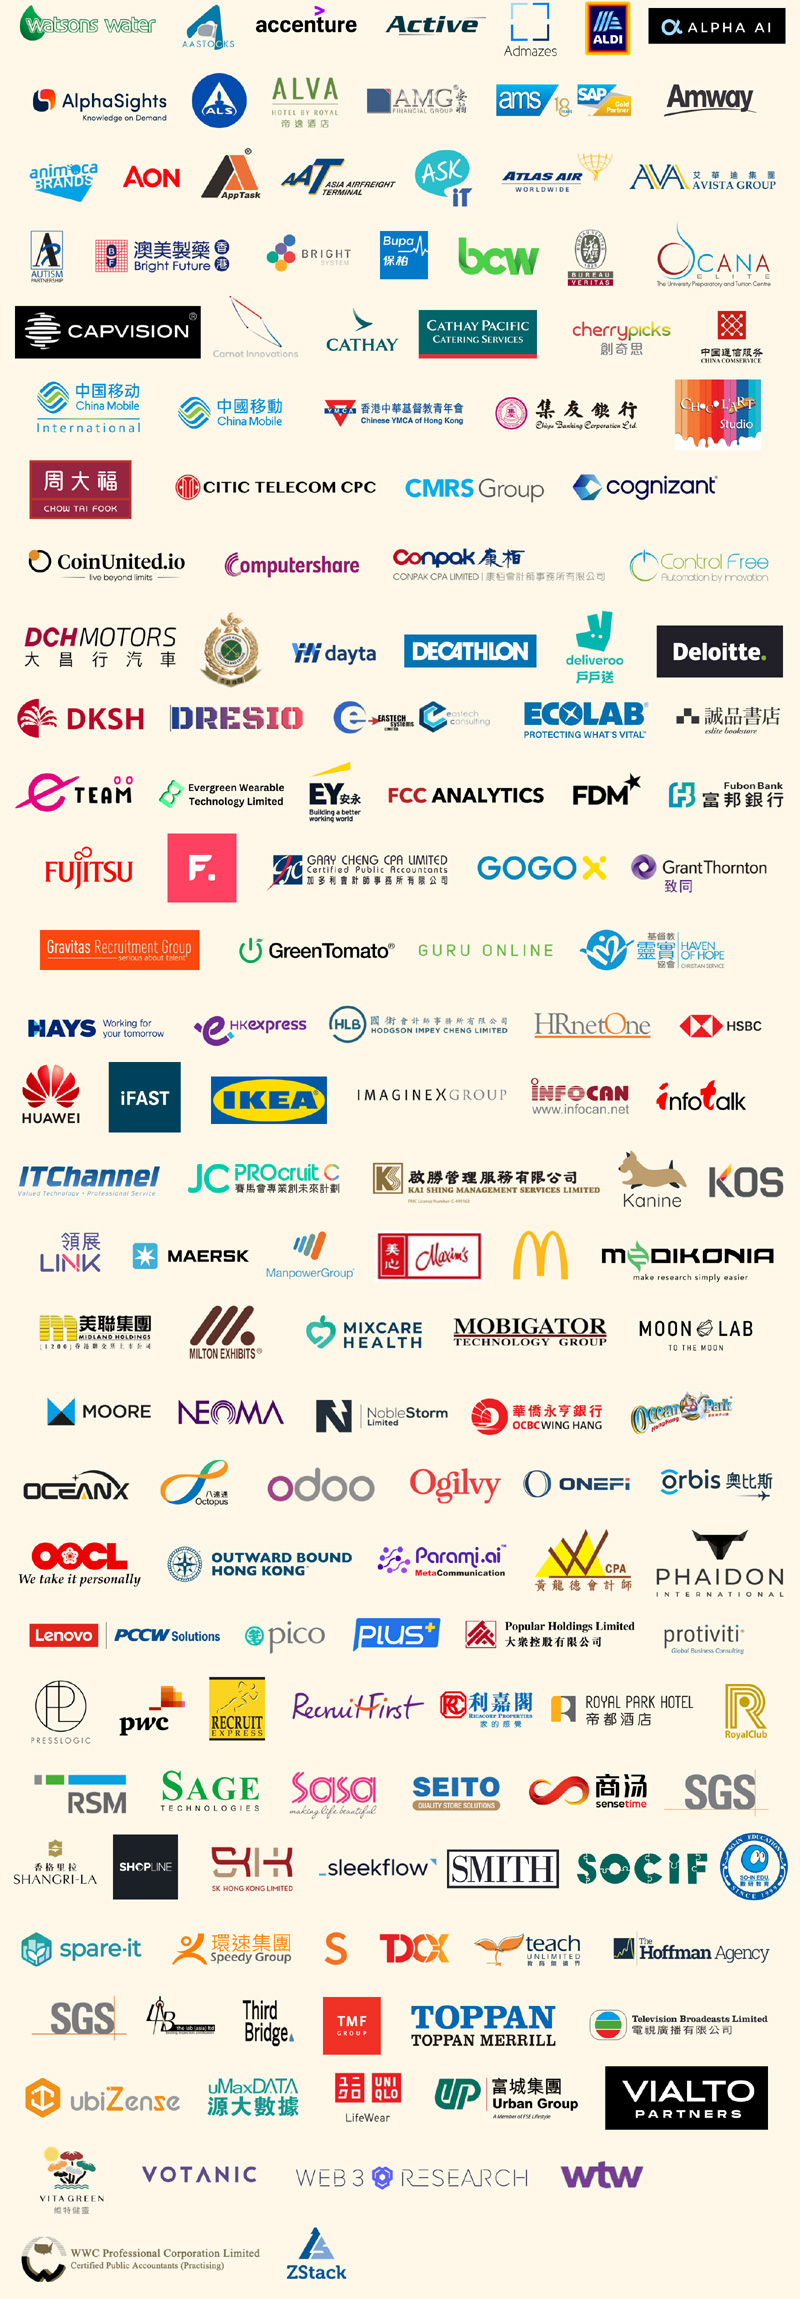 Career Fair Company Logos